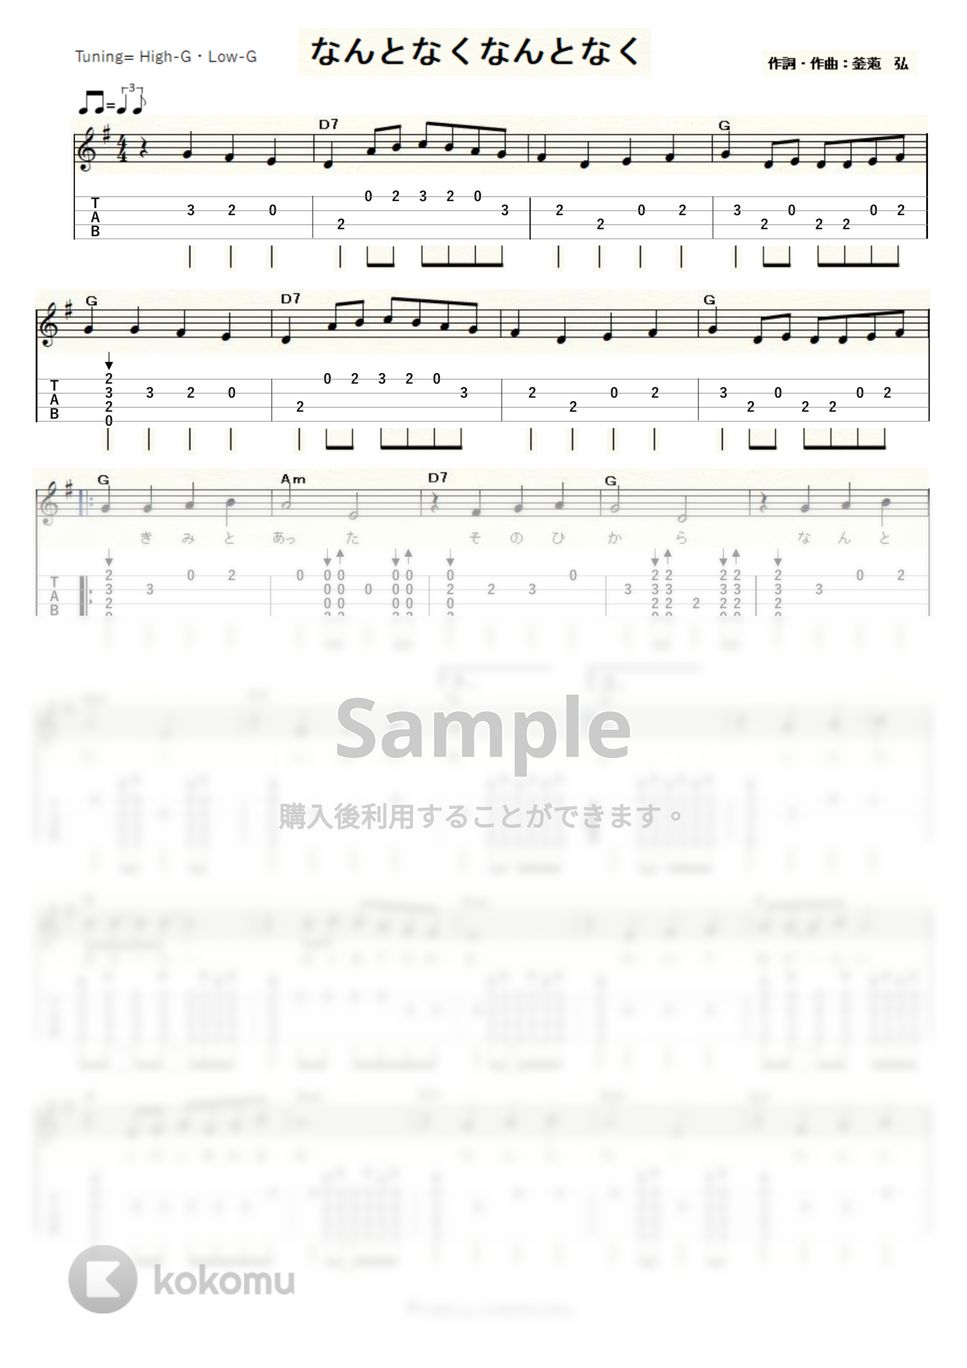 ザ・スパイダース - なんとなくなんとなく (ｳｸﾚﾚｿﾛ / High-G,Low-G / 初～中級) by ukulelepapa